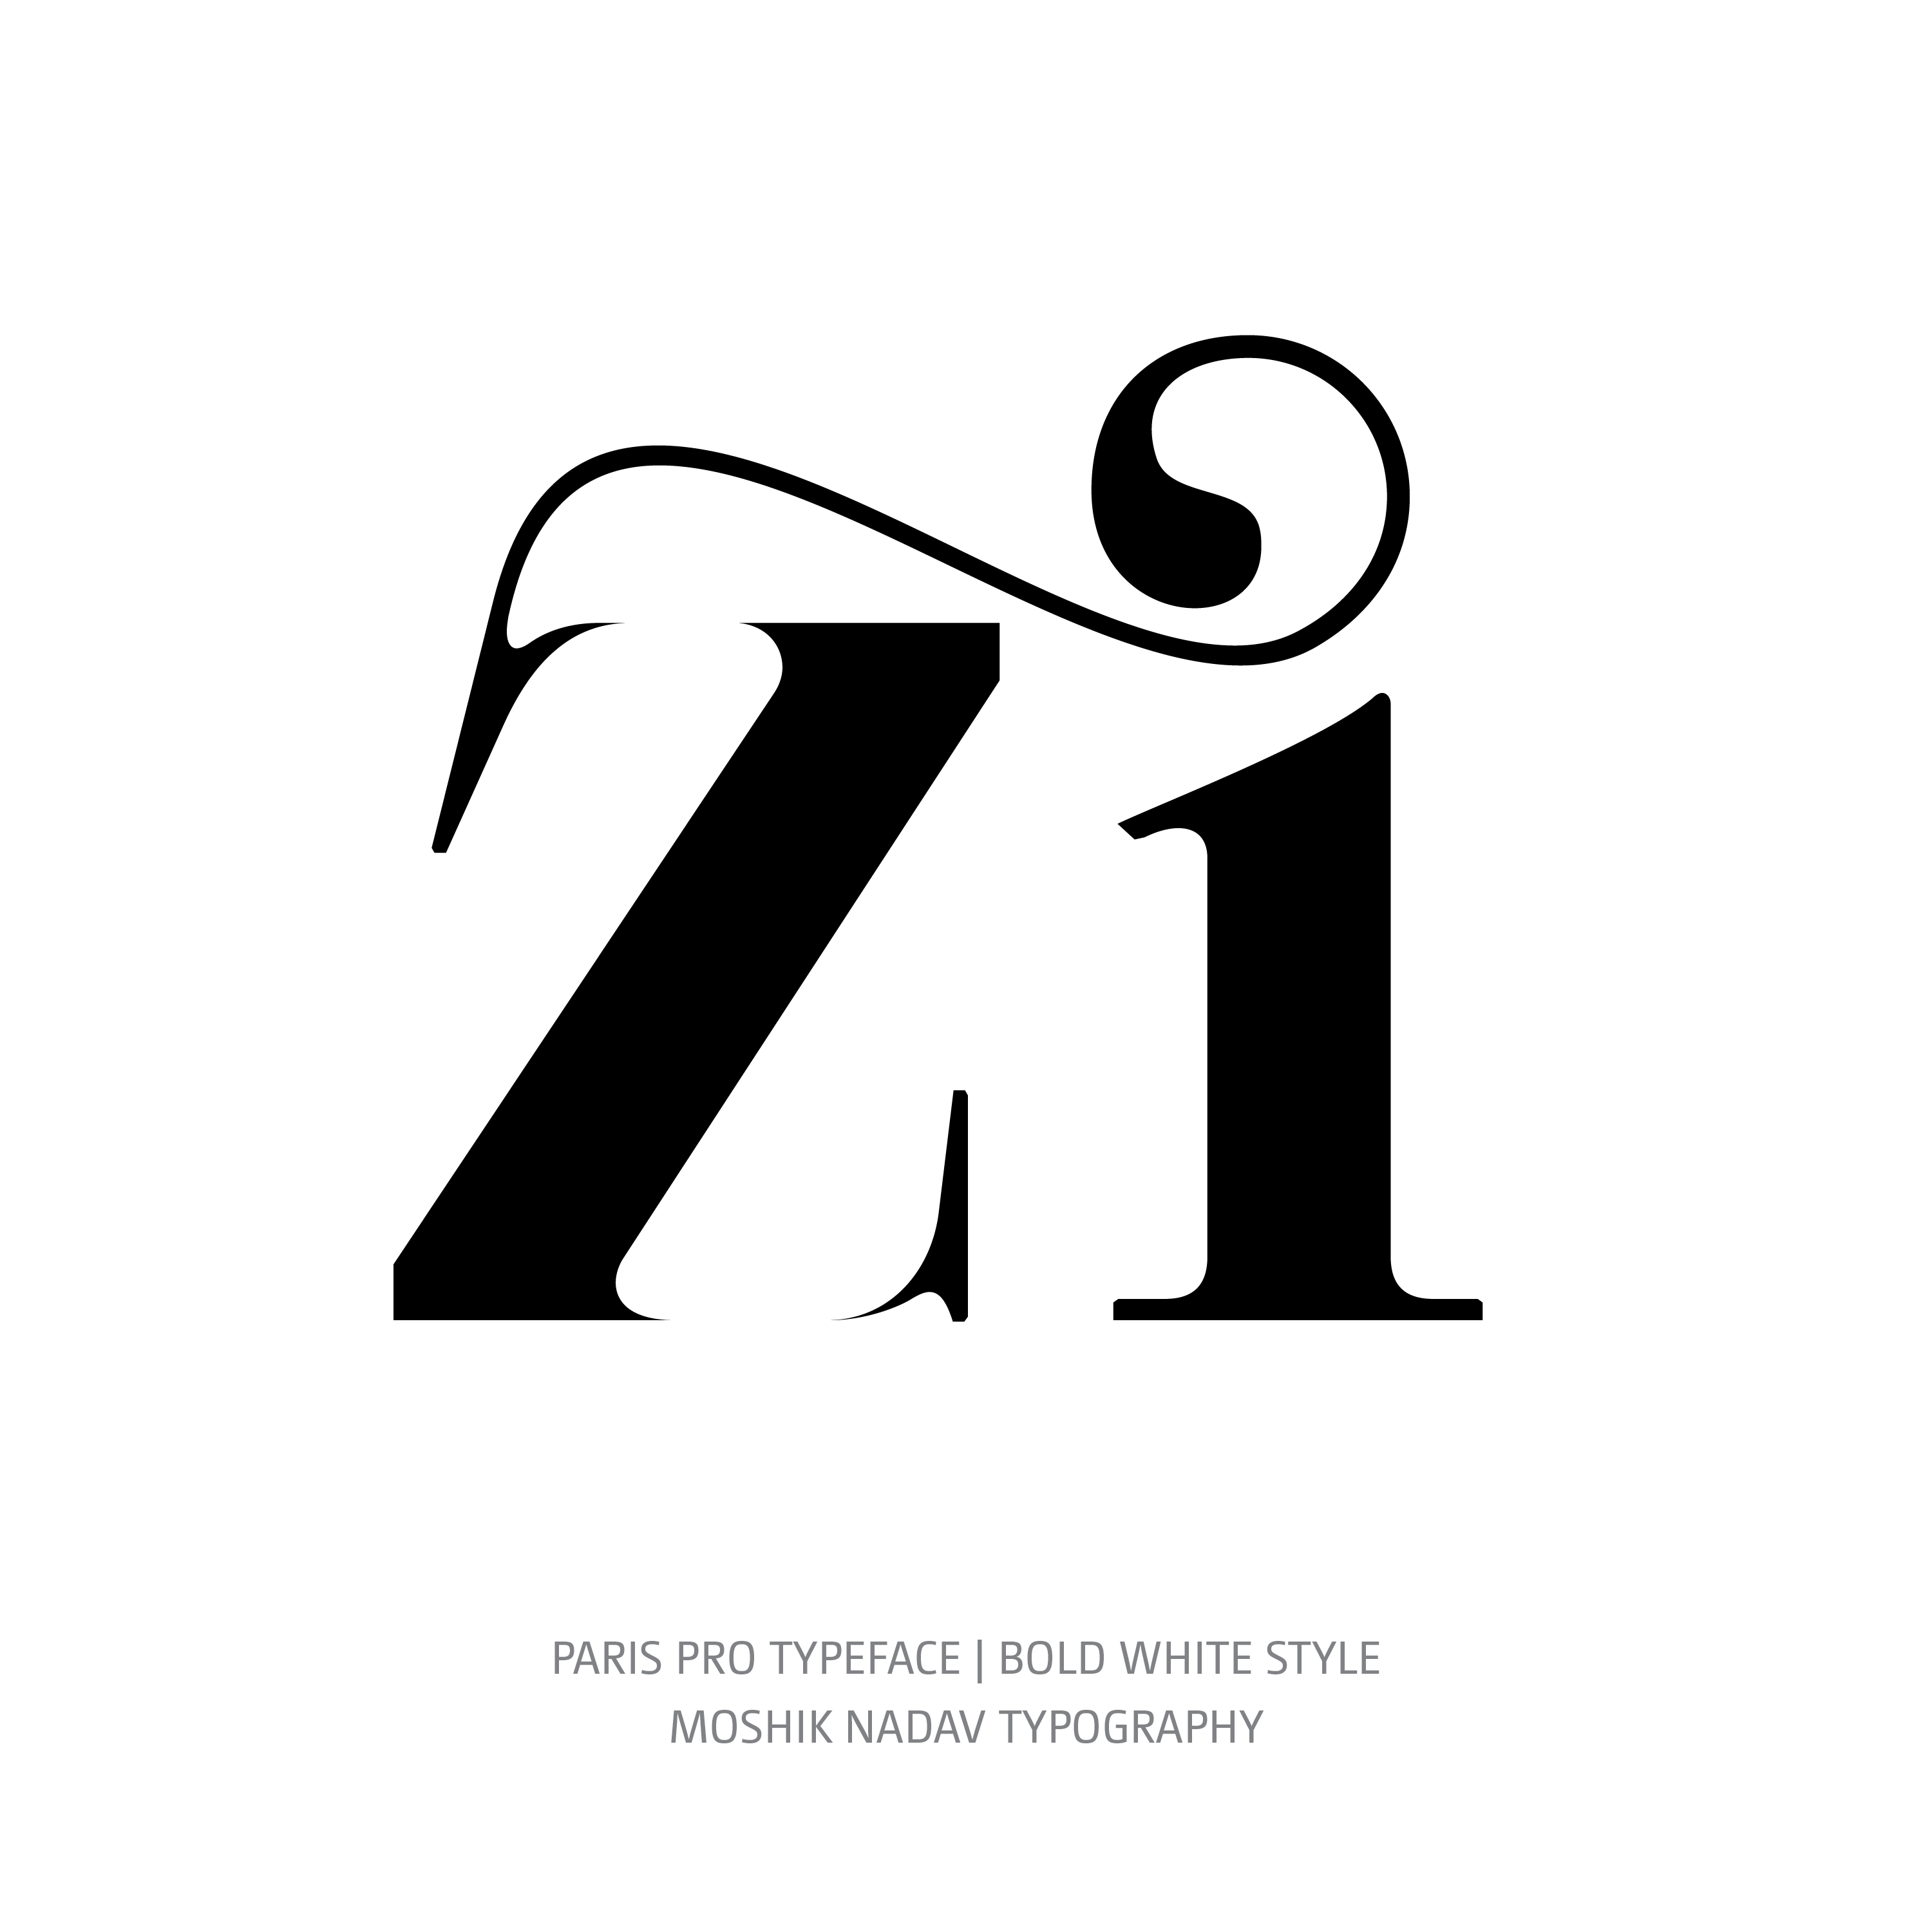 Paris Pro Typeface Bold White zi ligature glyph